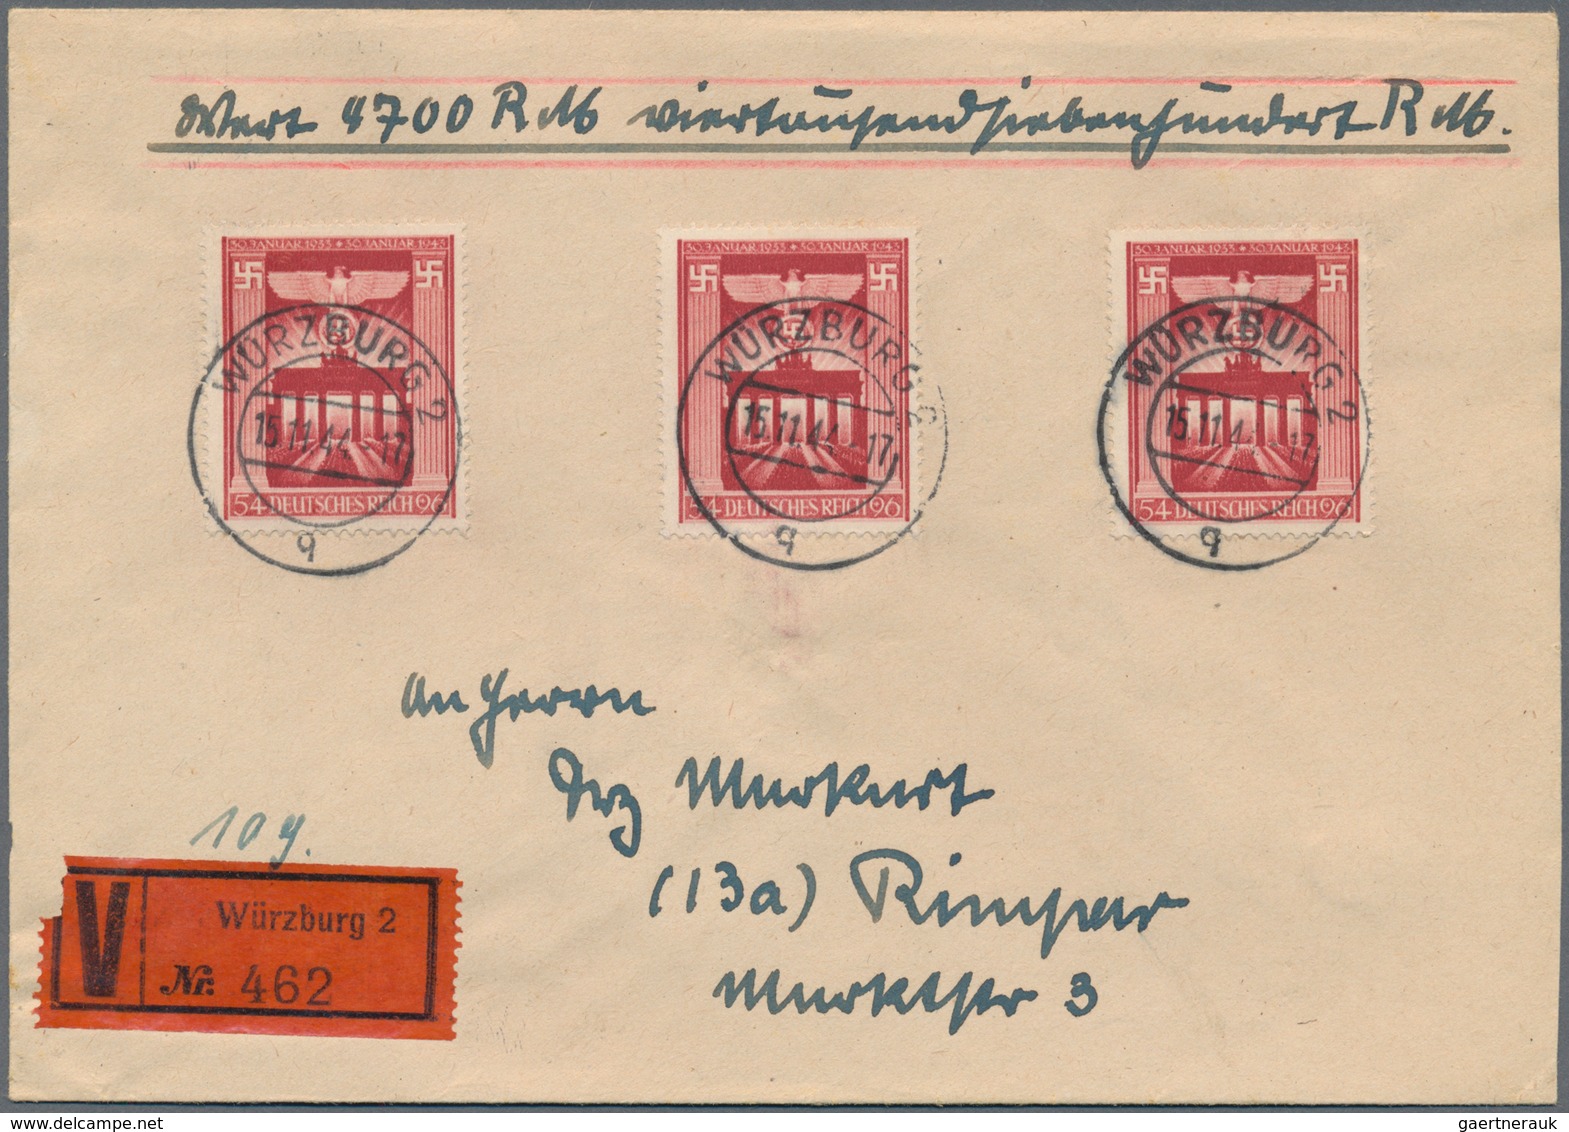 Deutsches Reich - 3. Reich: 1944, Lot von neun Wertbriefen mit portogerechten Mehrfachfrankaturen, d